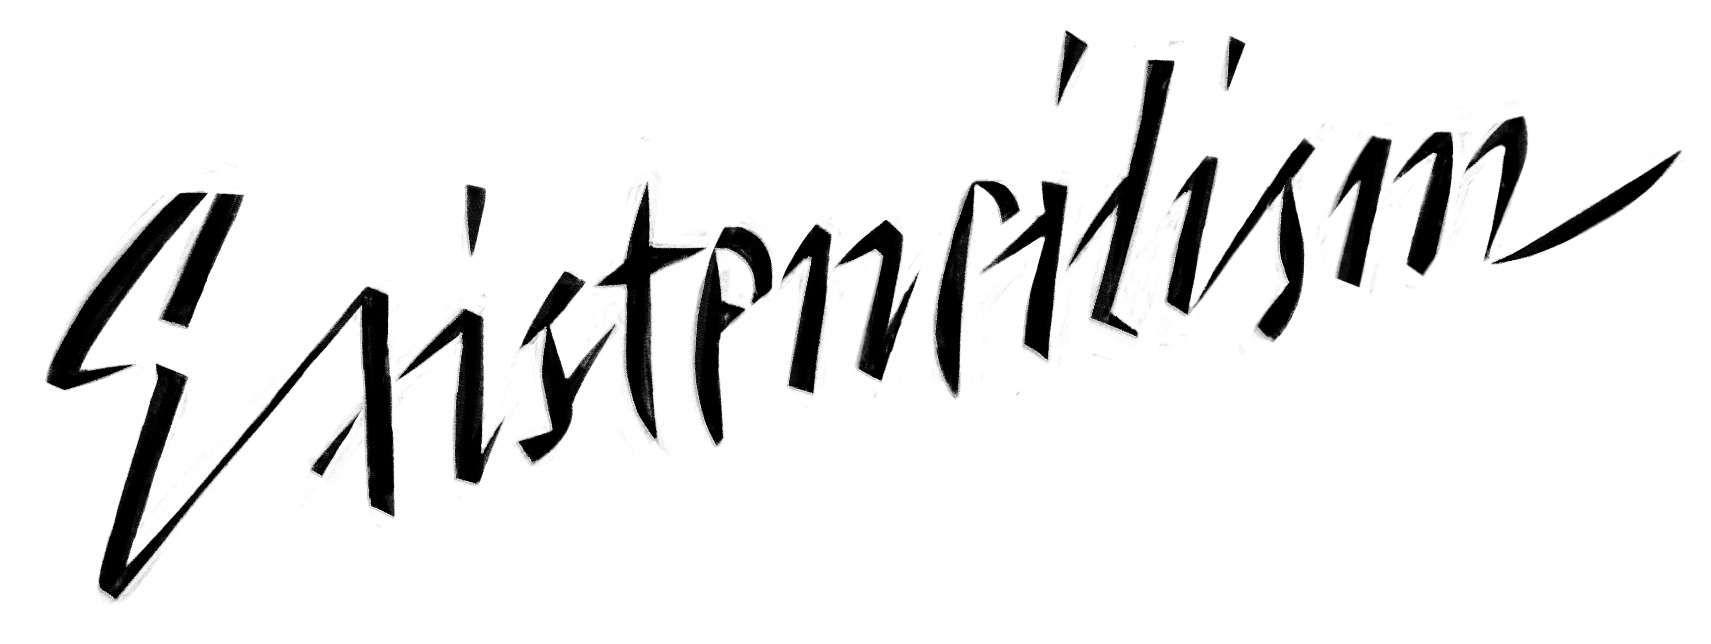 A sharlpy drawn, scripty word that says Existencilism